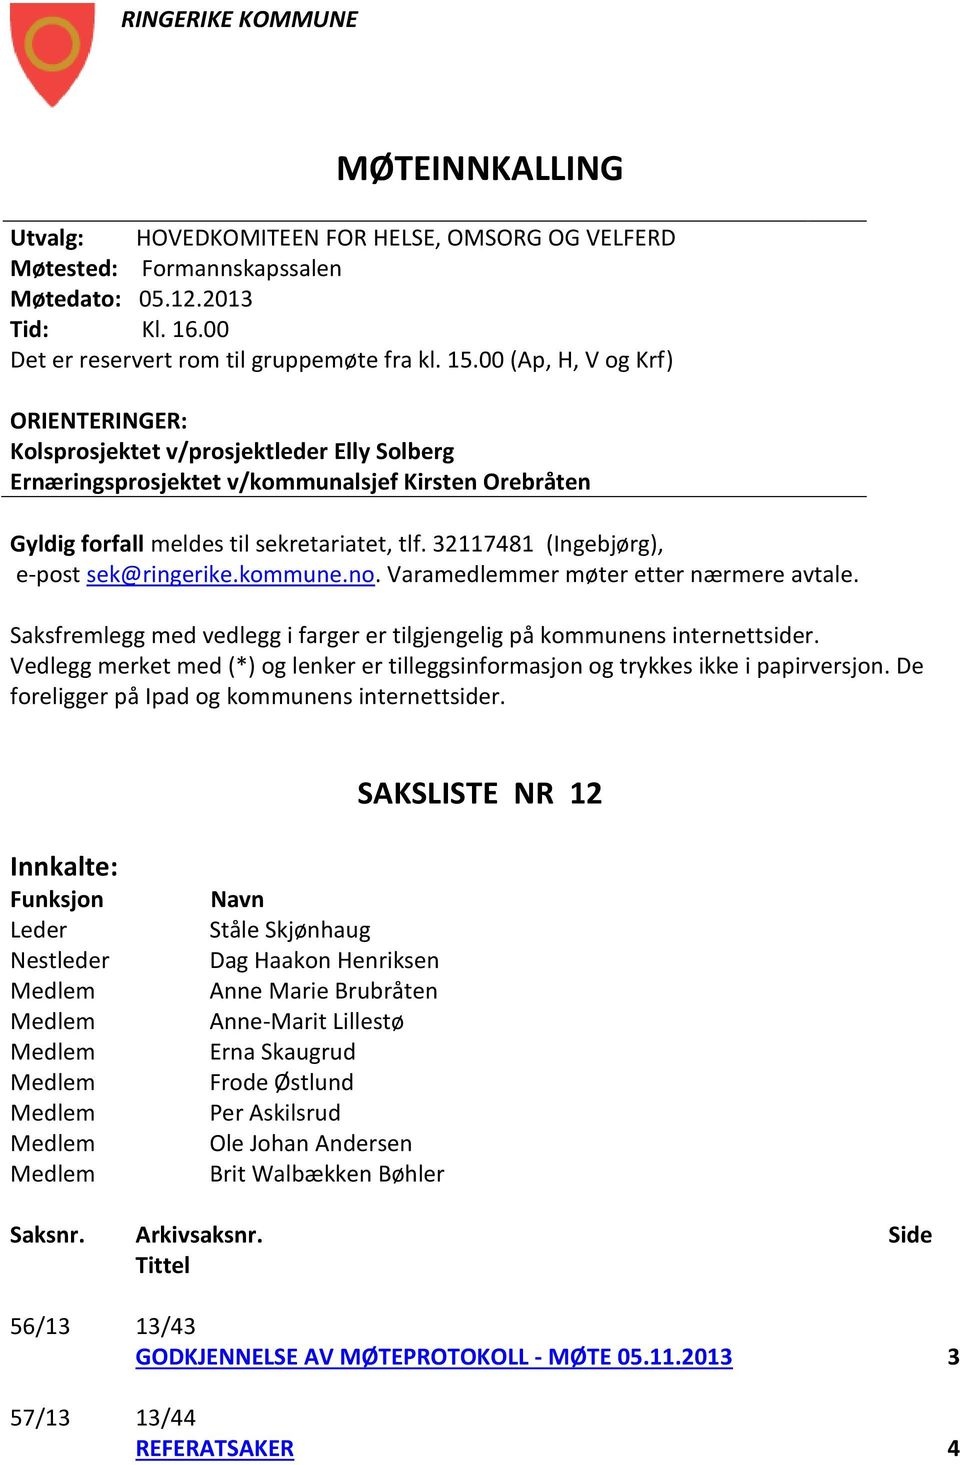 321141 (Ingebjørg), e-post sek@ringerike.kommune.no. Varamedlemmer møter etter nærmere avtale. Saksfremlegg med vedlegg i farger er tilgjengelig på kommunens internettsider.